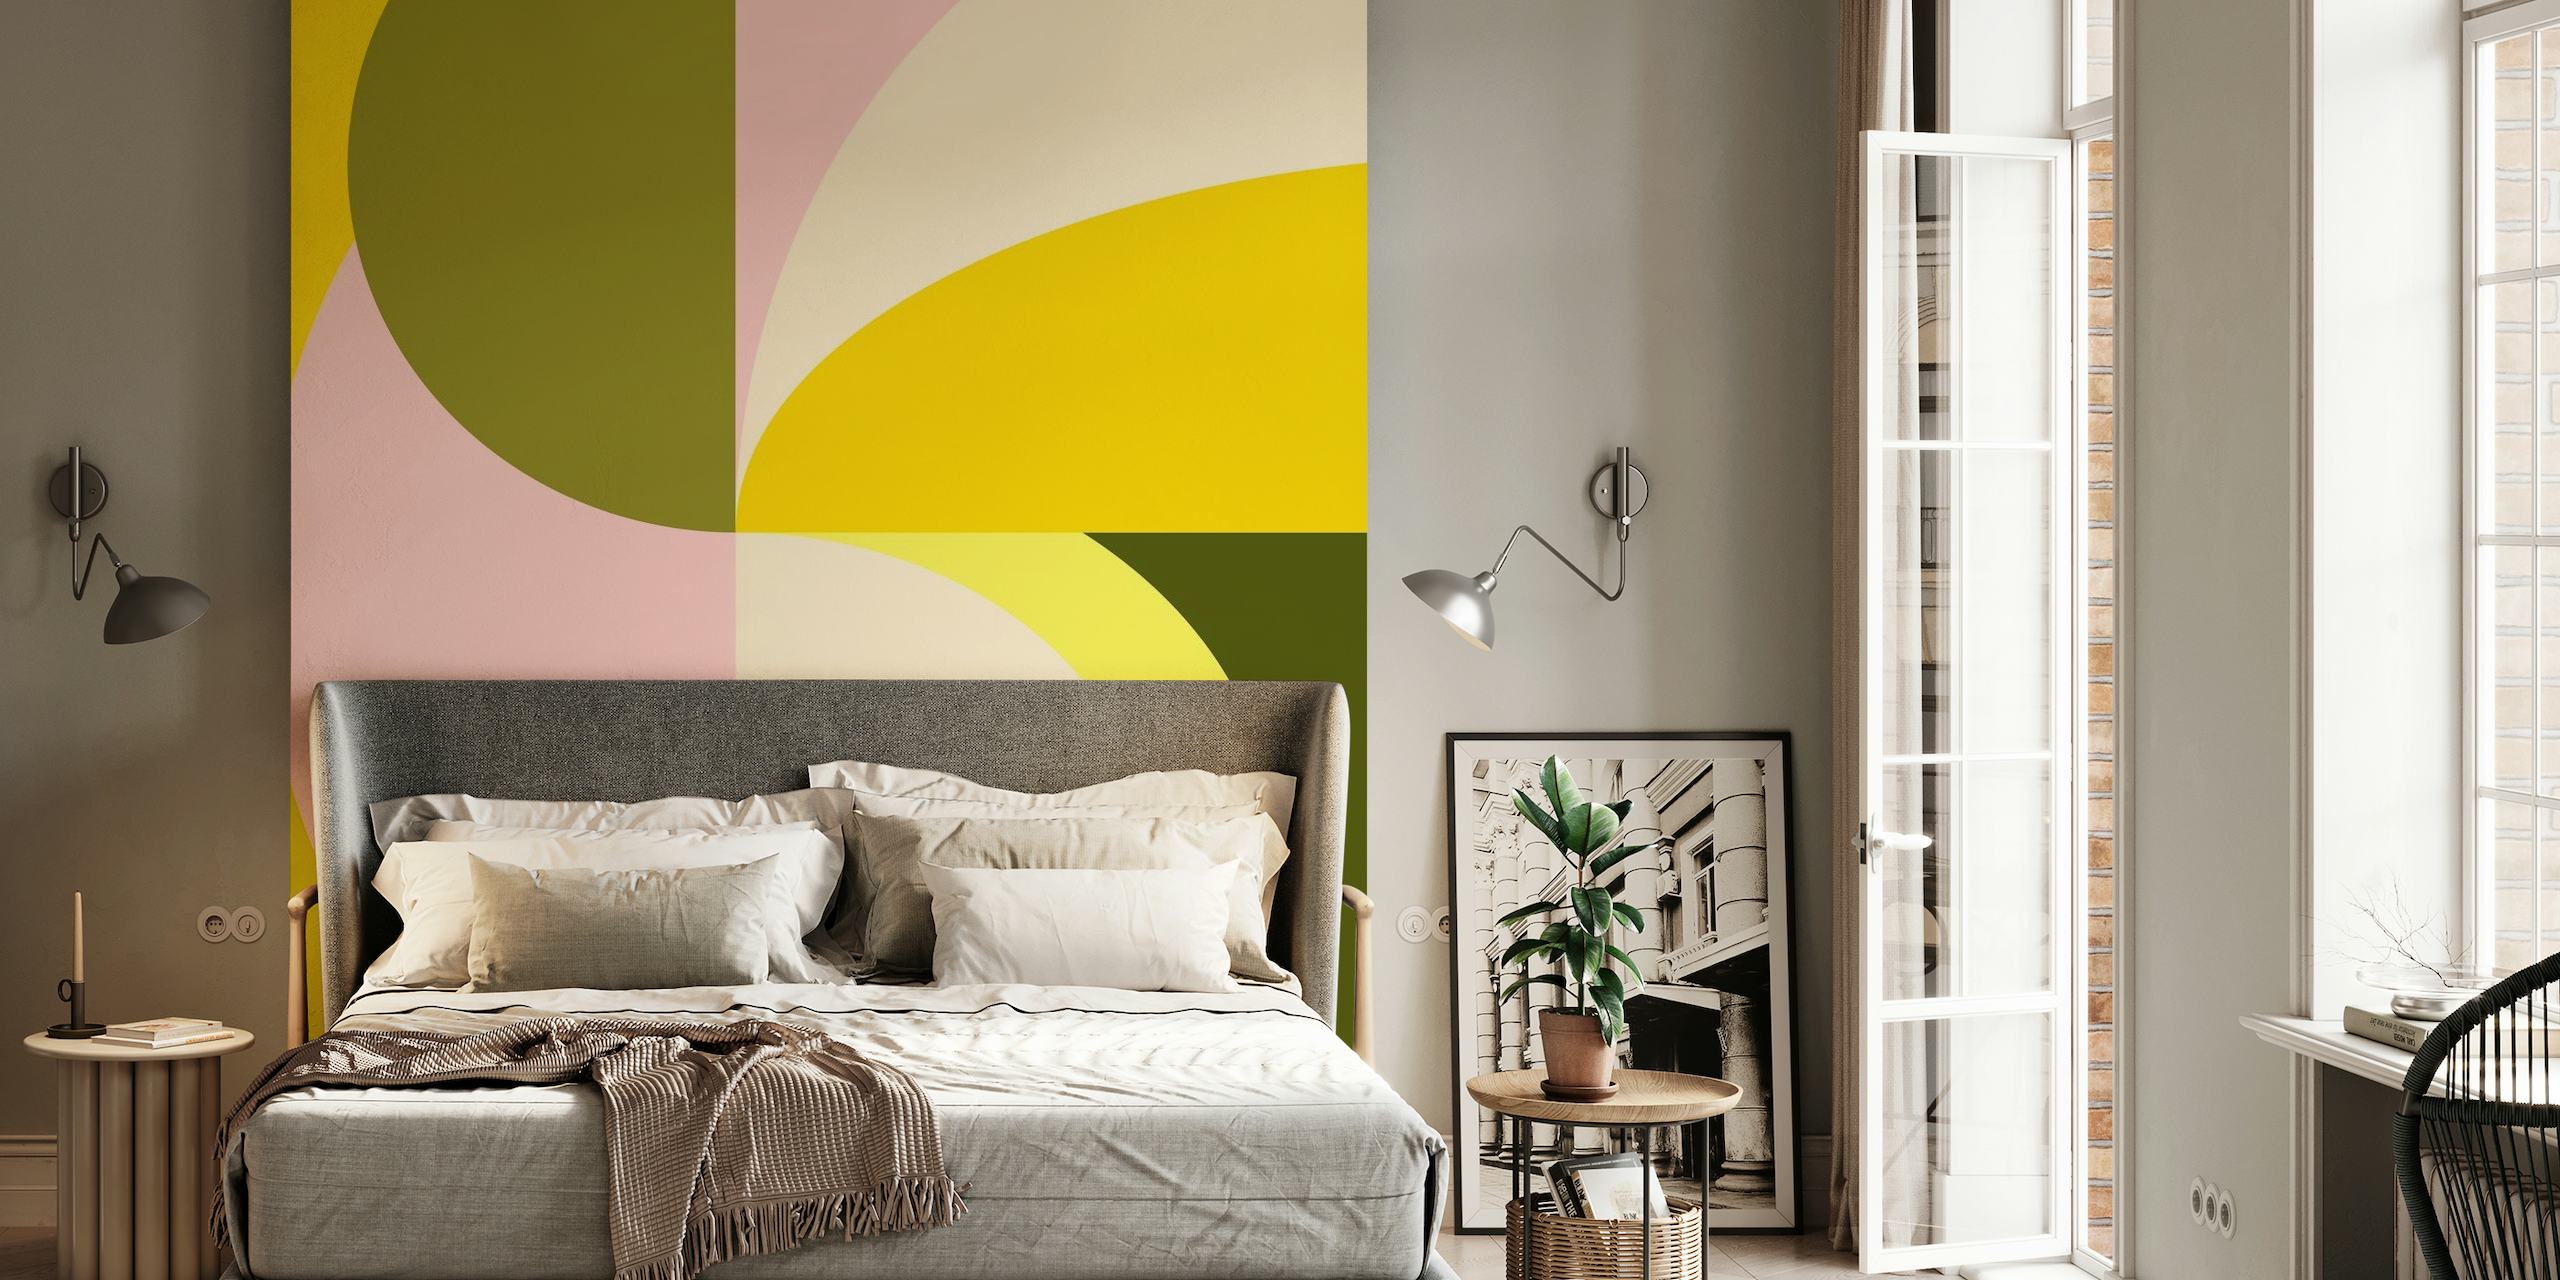 Abstrakt vægmaleri med geometriske former med citrusfarver, herunder gule, pink og grønne toner